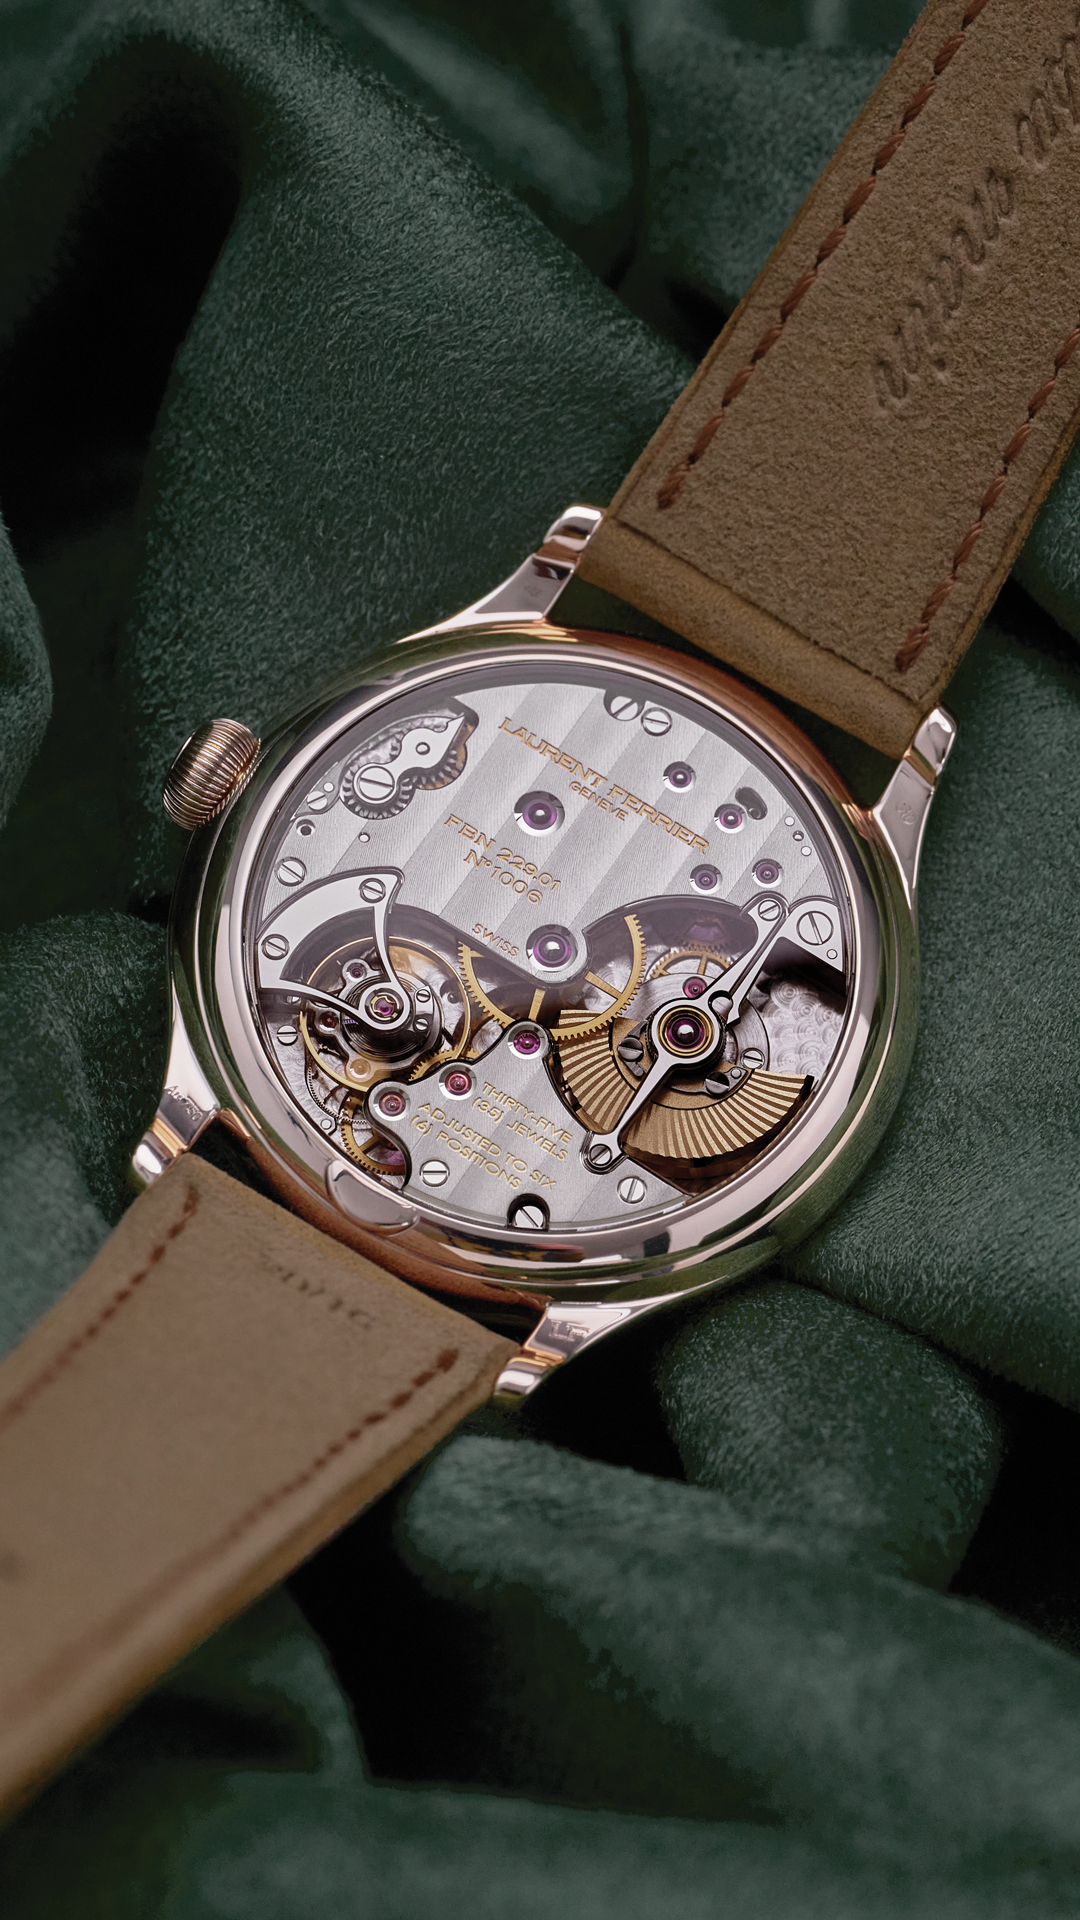 Laurent Ferrier представляет классические квадратные часы с микроротором в цвете Evergreen